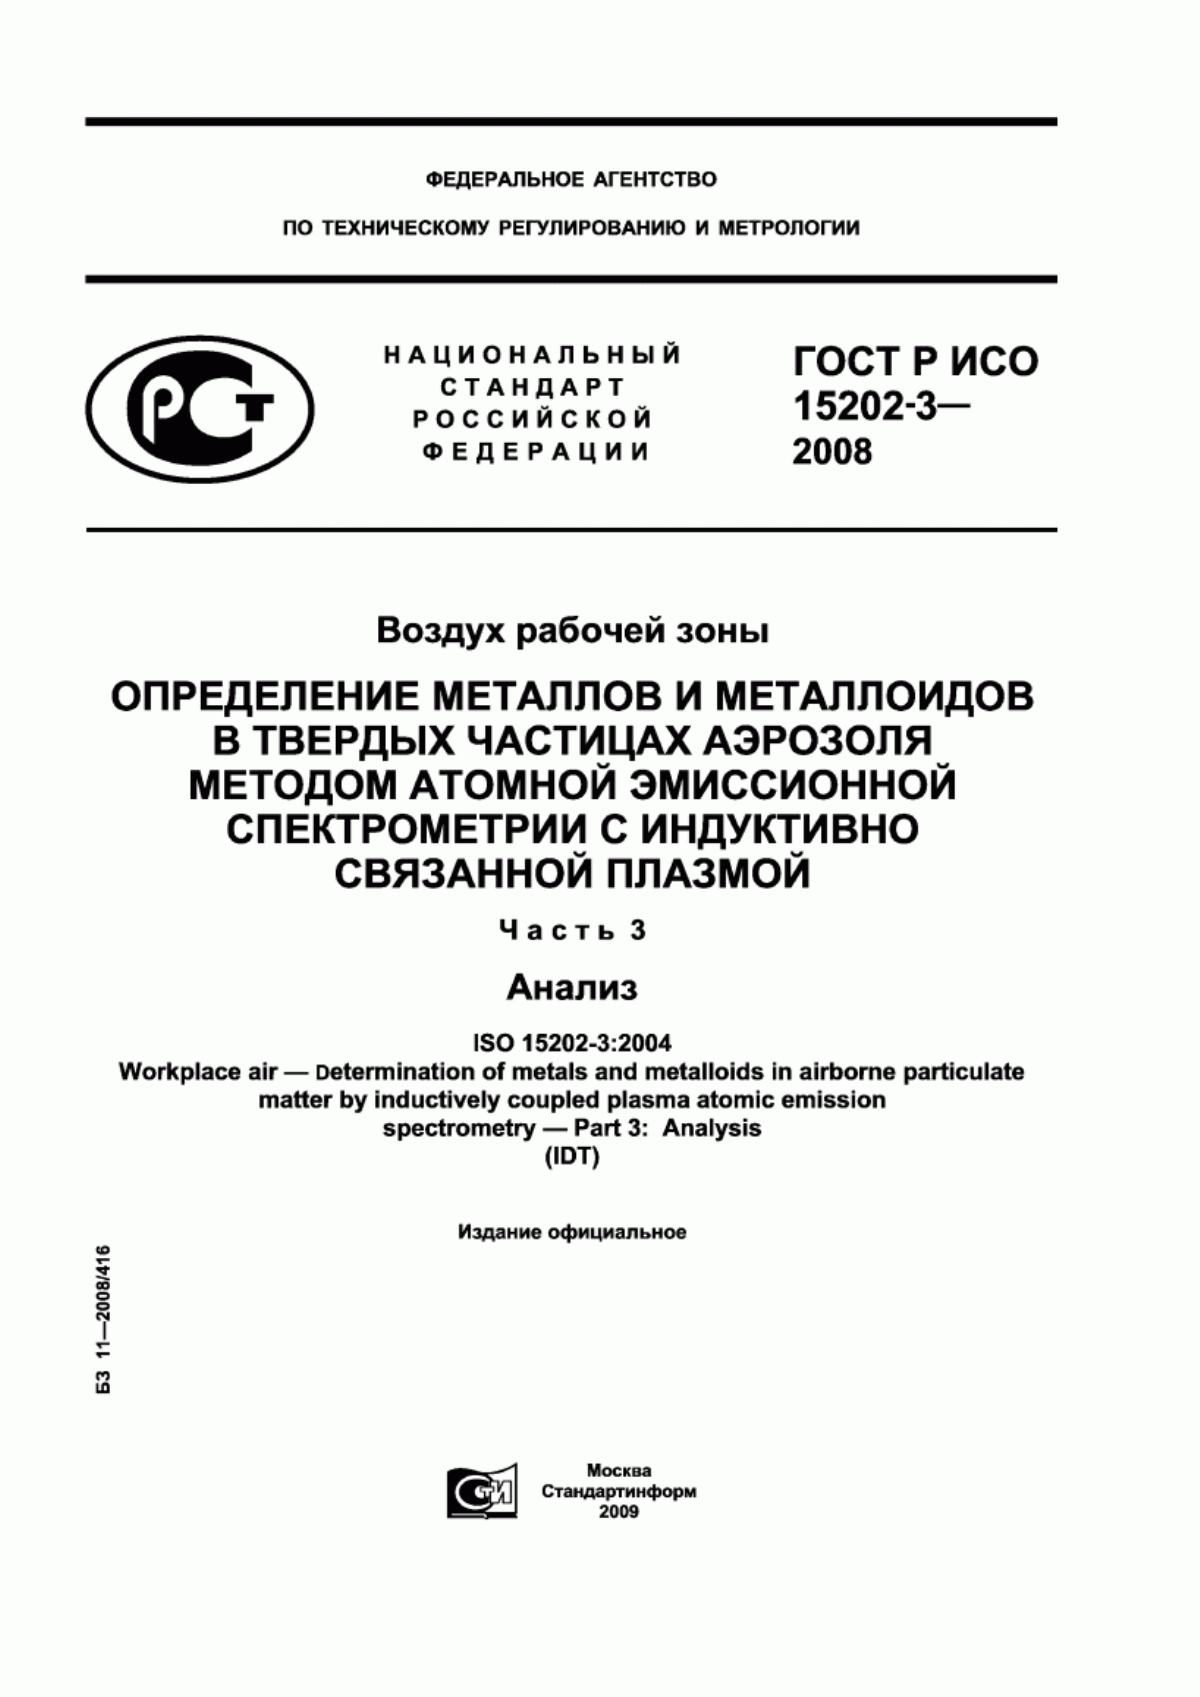 ГОСТ Р ИСО 15202-3-2008 Воздух рабочей зоны. Определение металлов и металлоидов в твердых частицах аэрозоля методом атомной эмиссионной спектрометрии с индуктивно связанной плазмой. Часть 3. Анализ